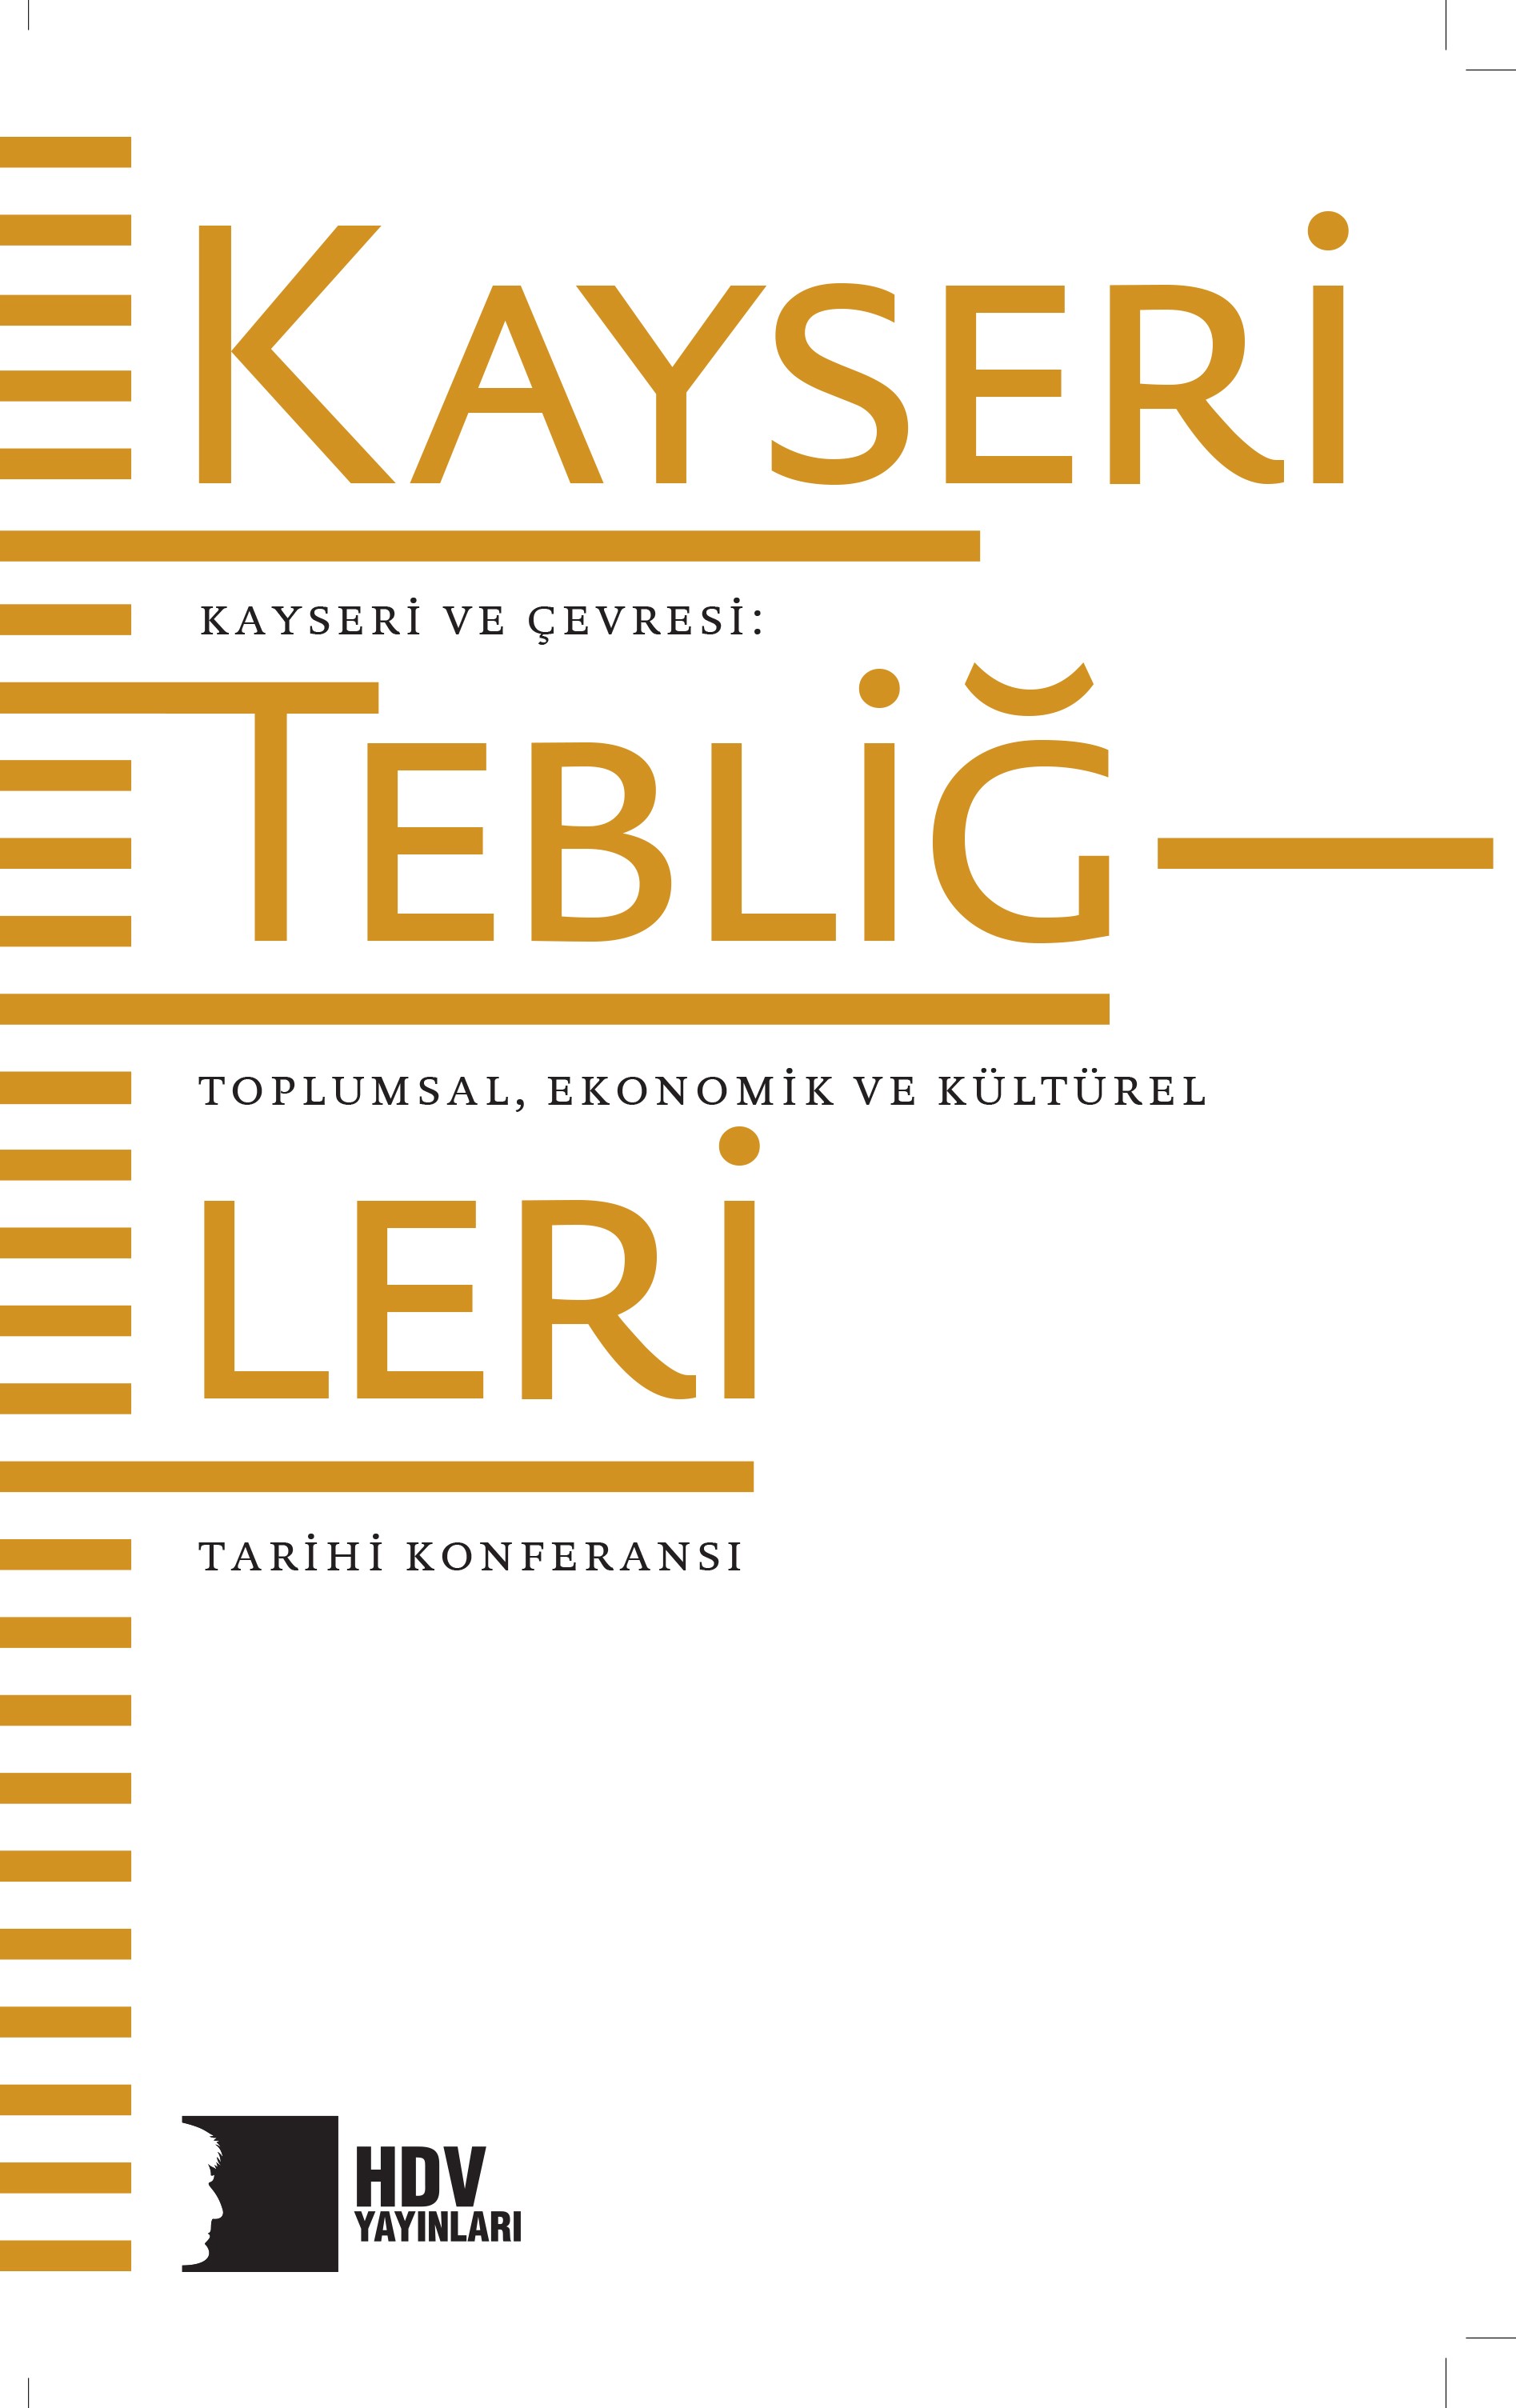 Kayseri Tebliğleri Kayseri ve Çevresi Toplumsal ve Ekonomik Tarihi Konferansı Hrant Dink